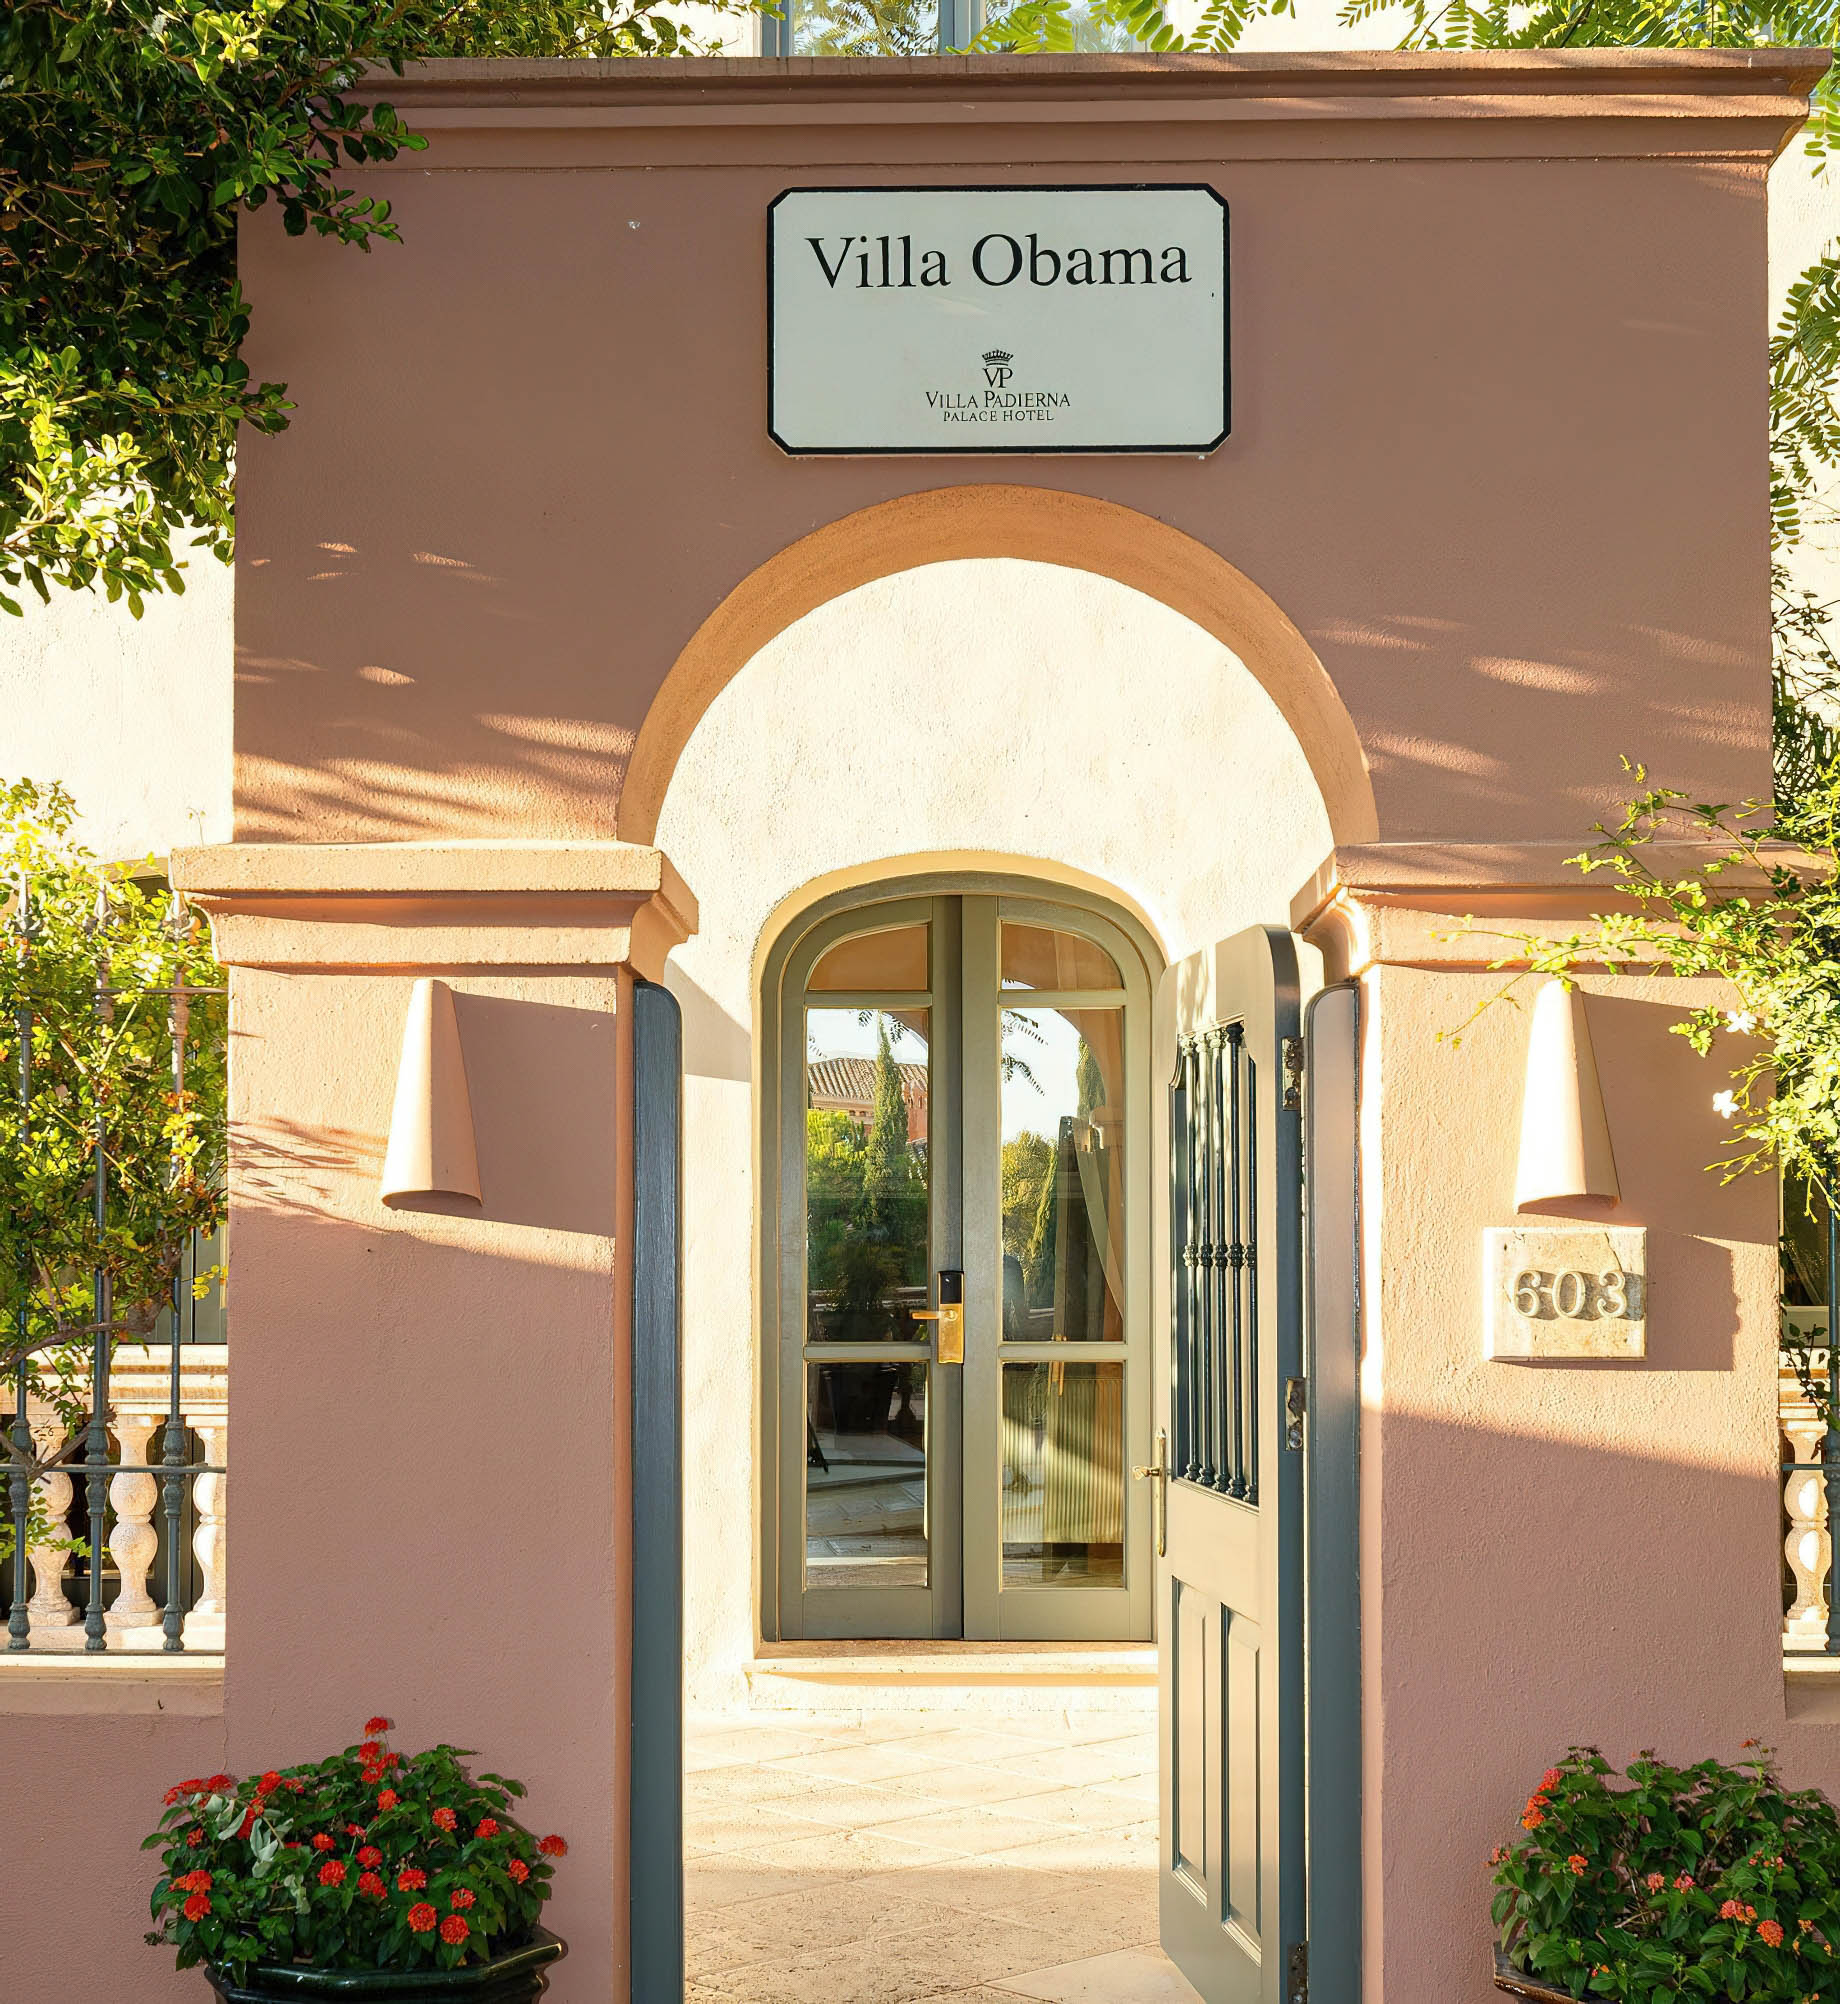 Anantara Villa Padierna Palace Benahavís Marbella Resort – Spain – Villa Obama